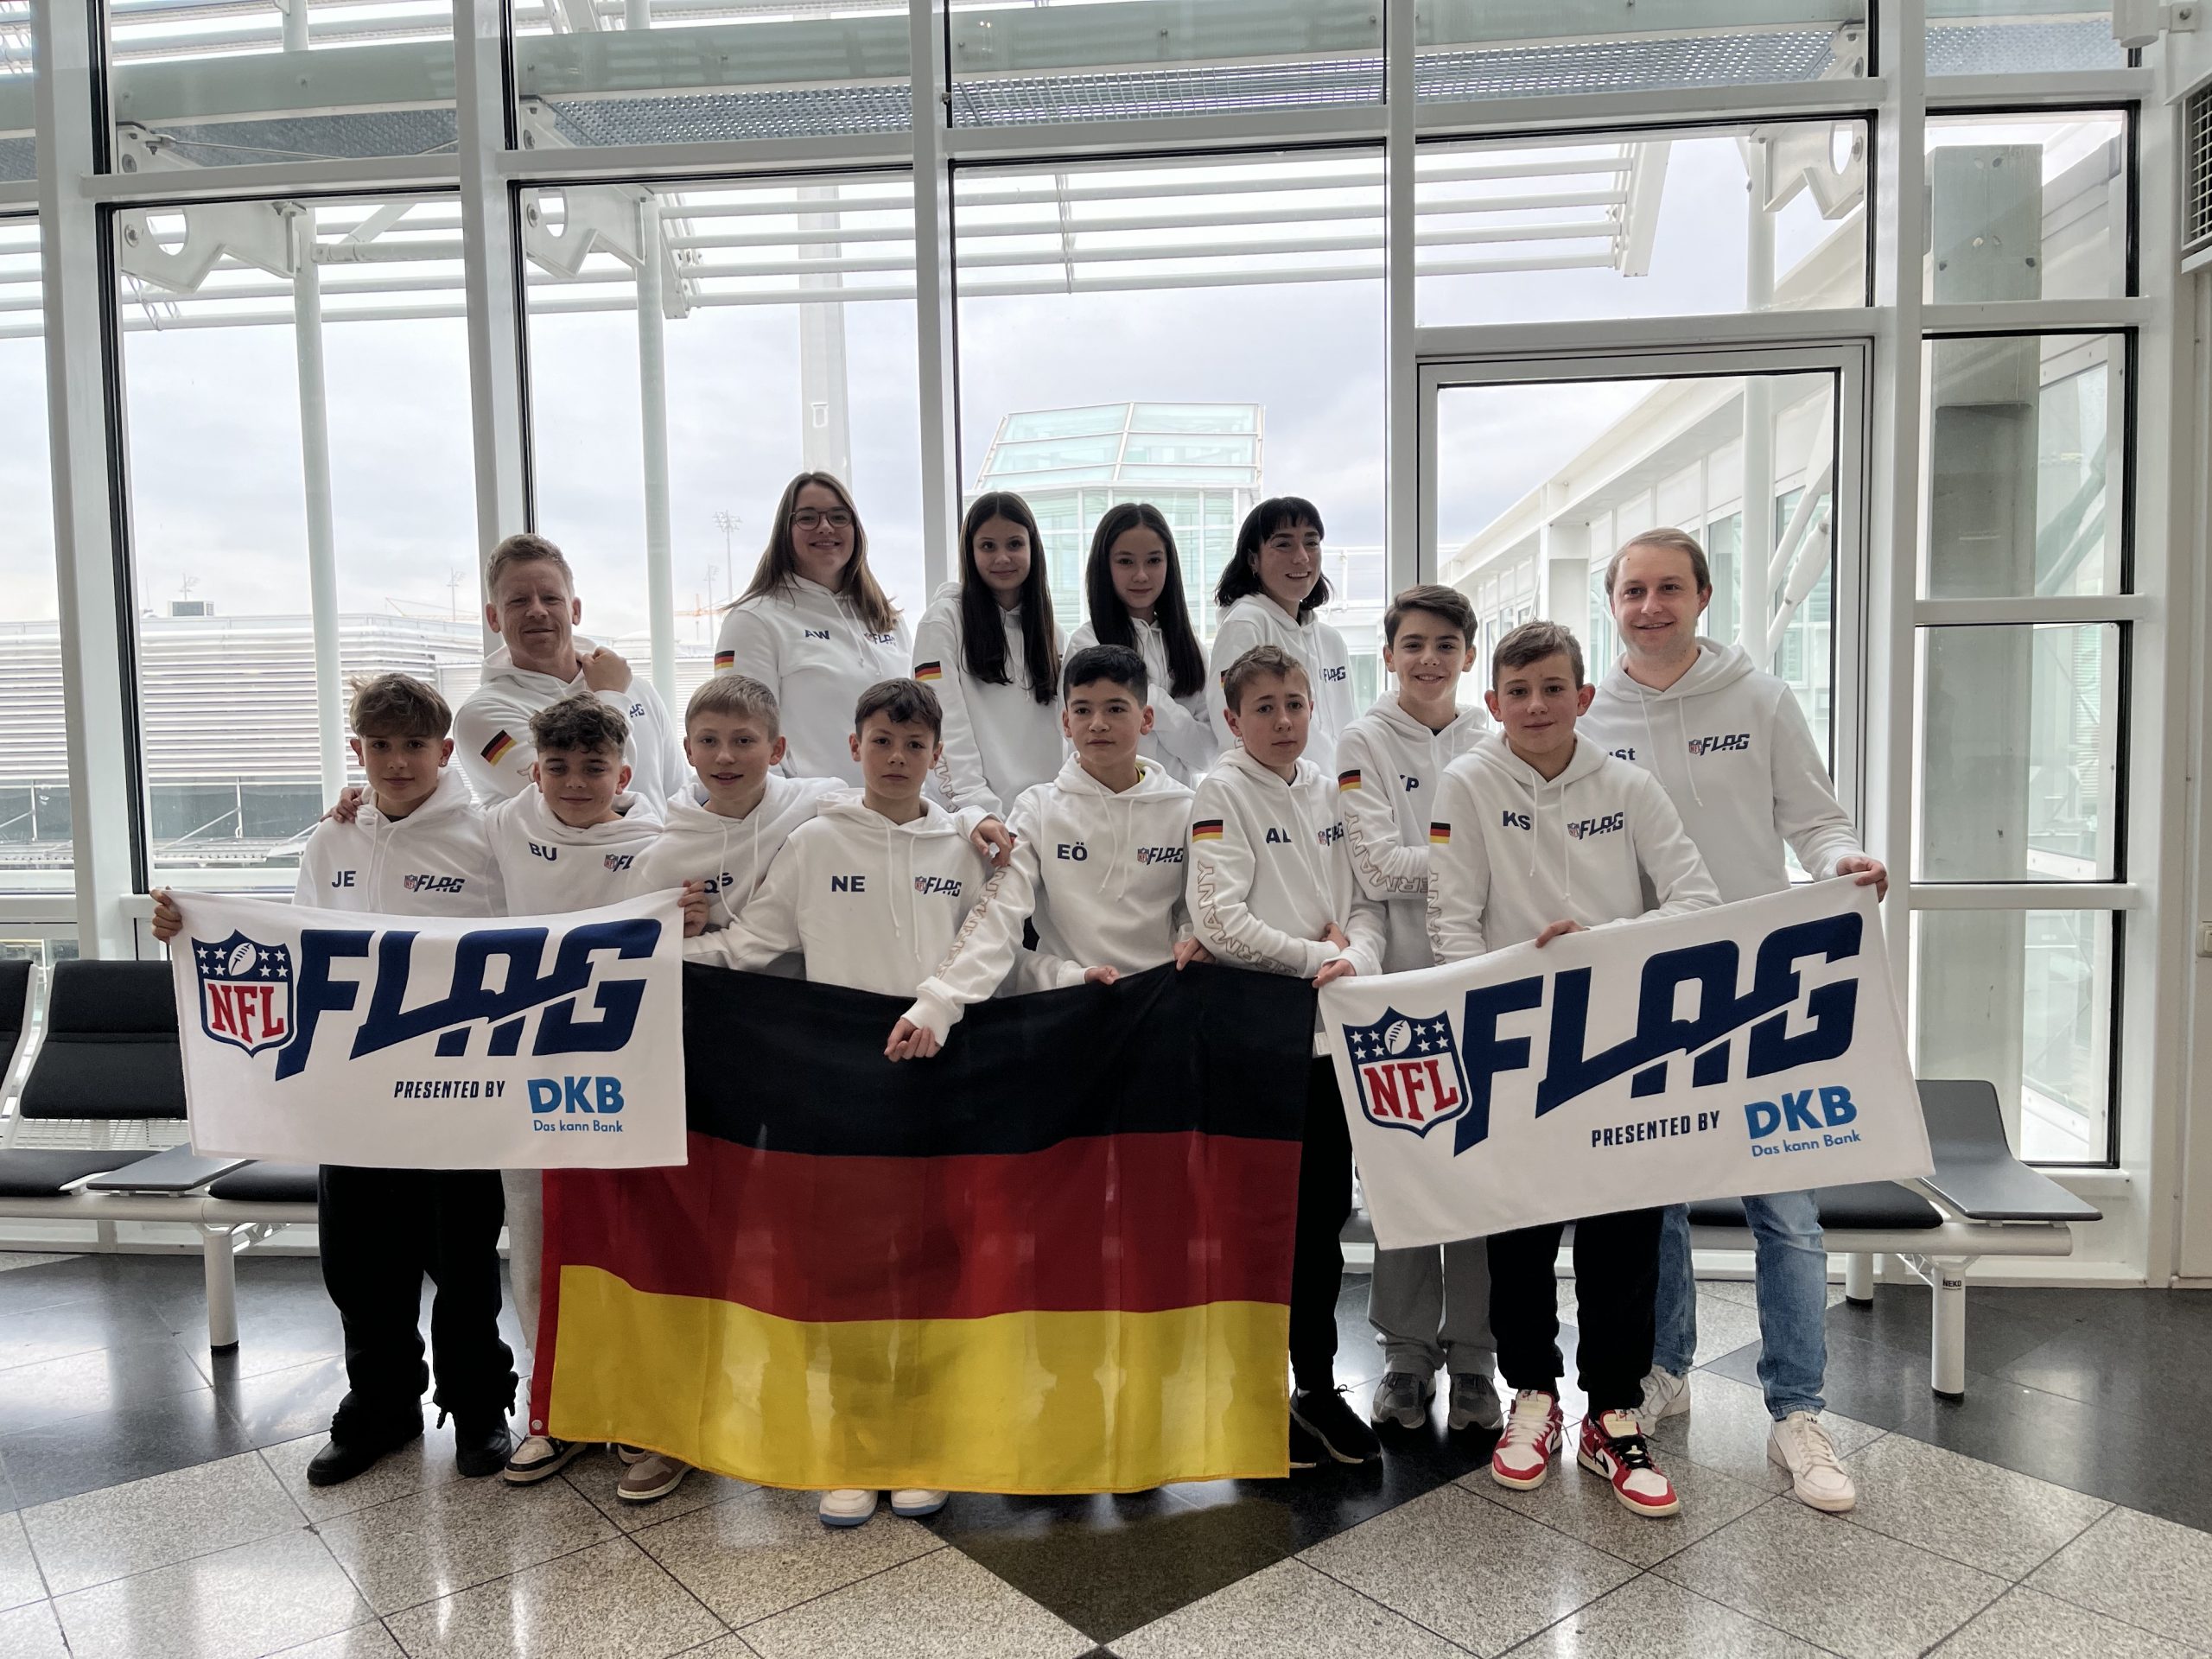 FootballR - NFL - Diese Beschreibung wurde automatisch generiert. Eine Gruppe von Menschen posiert für ein Foto mit einer deutschen Flagge, die ein Flag-Football-Team repräsentiert.